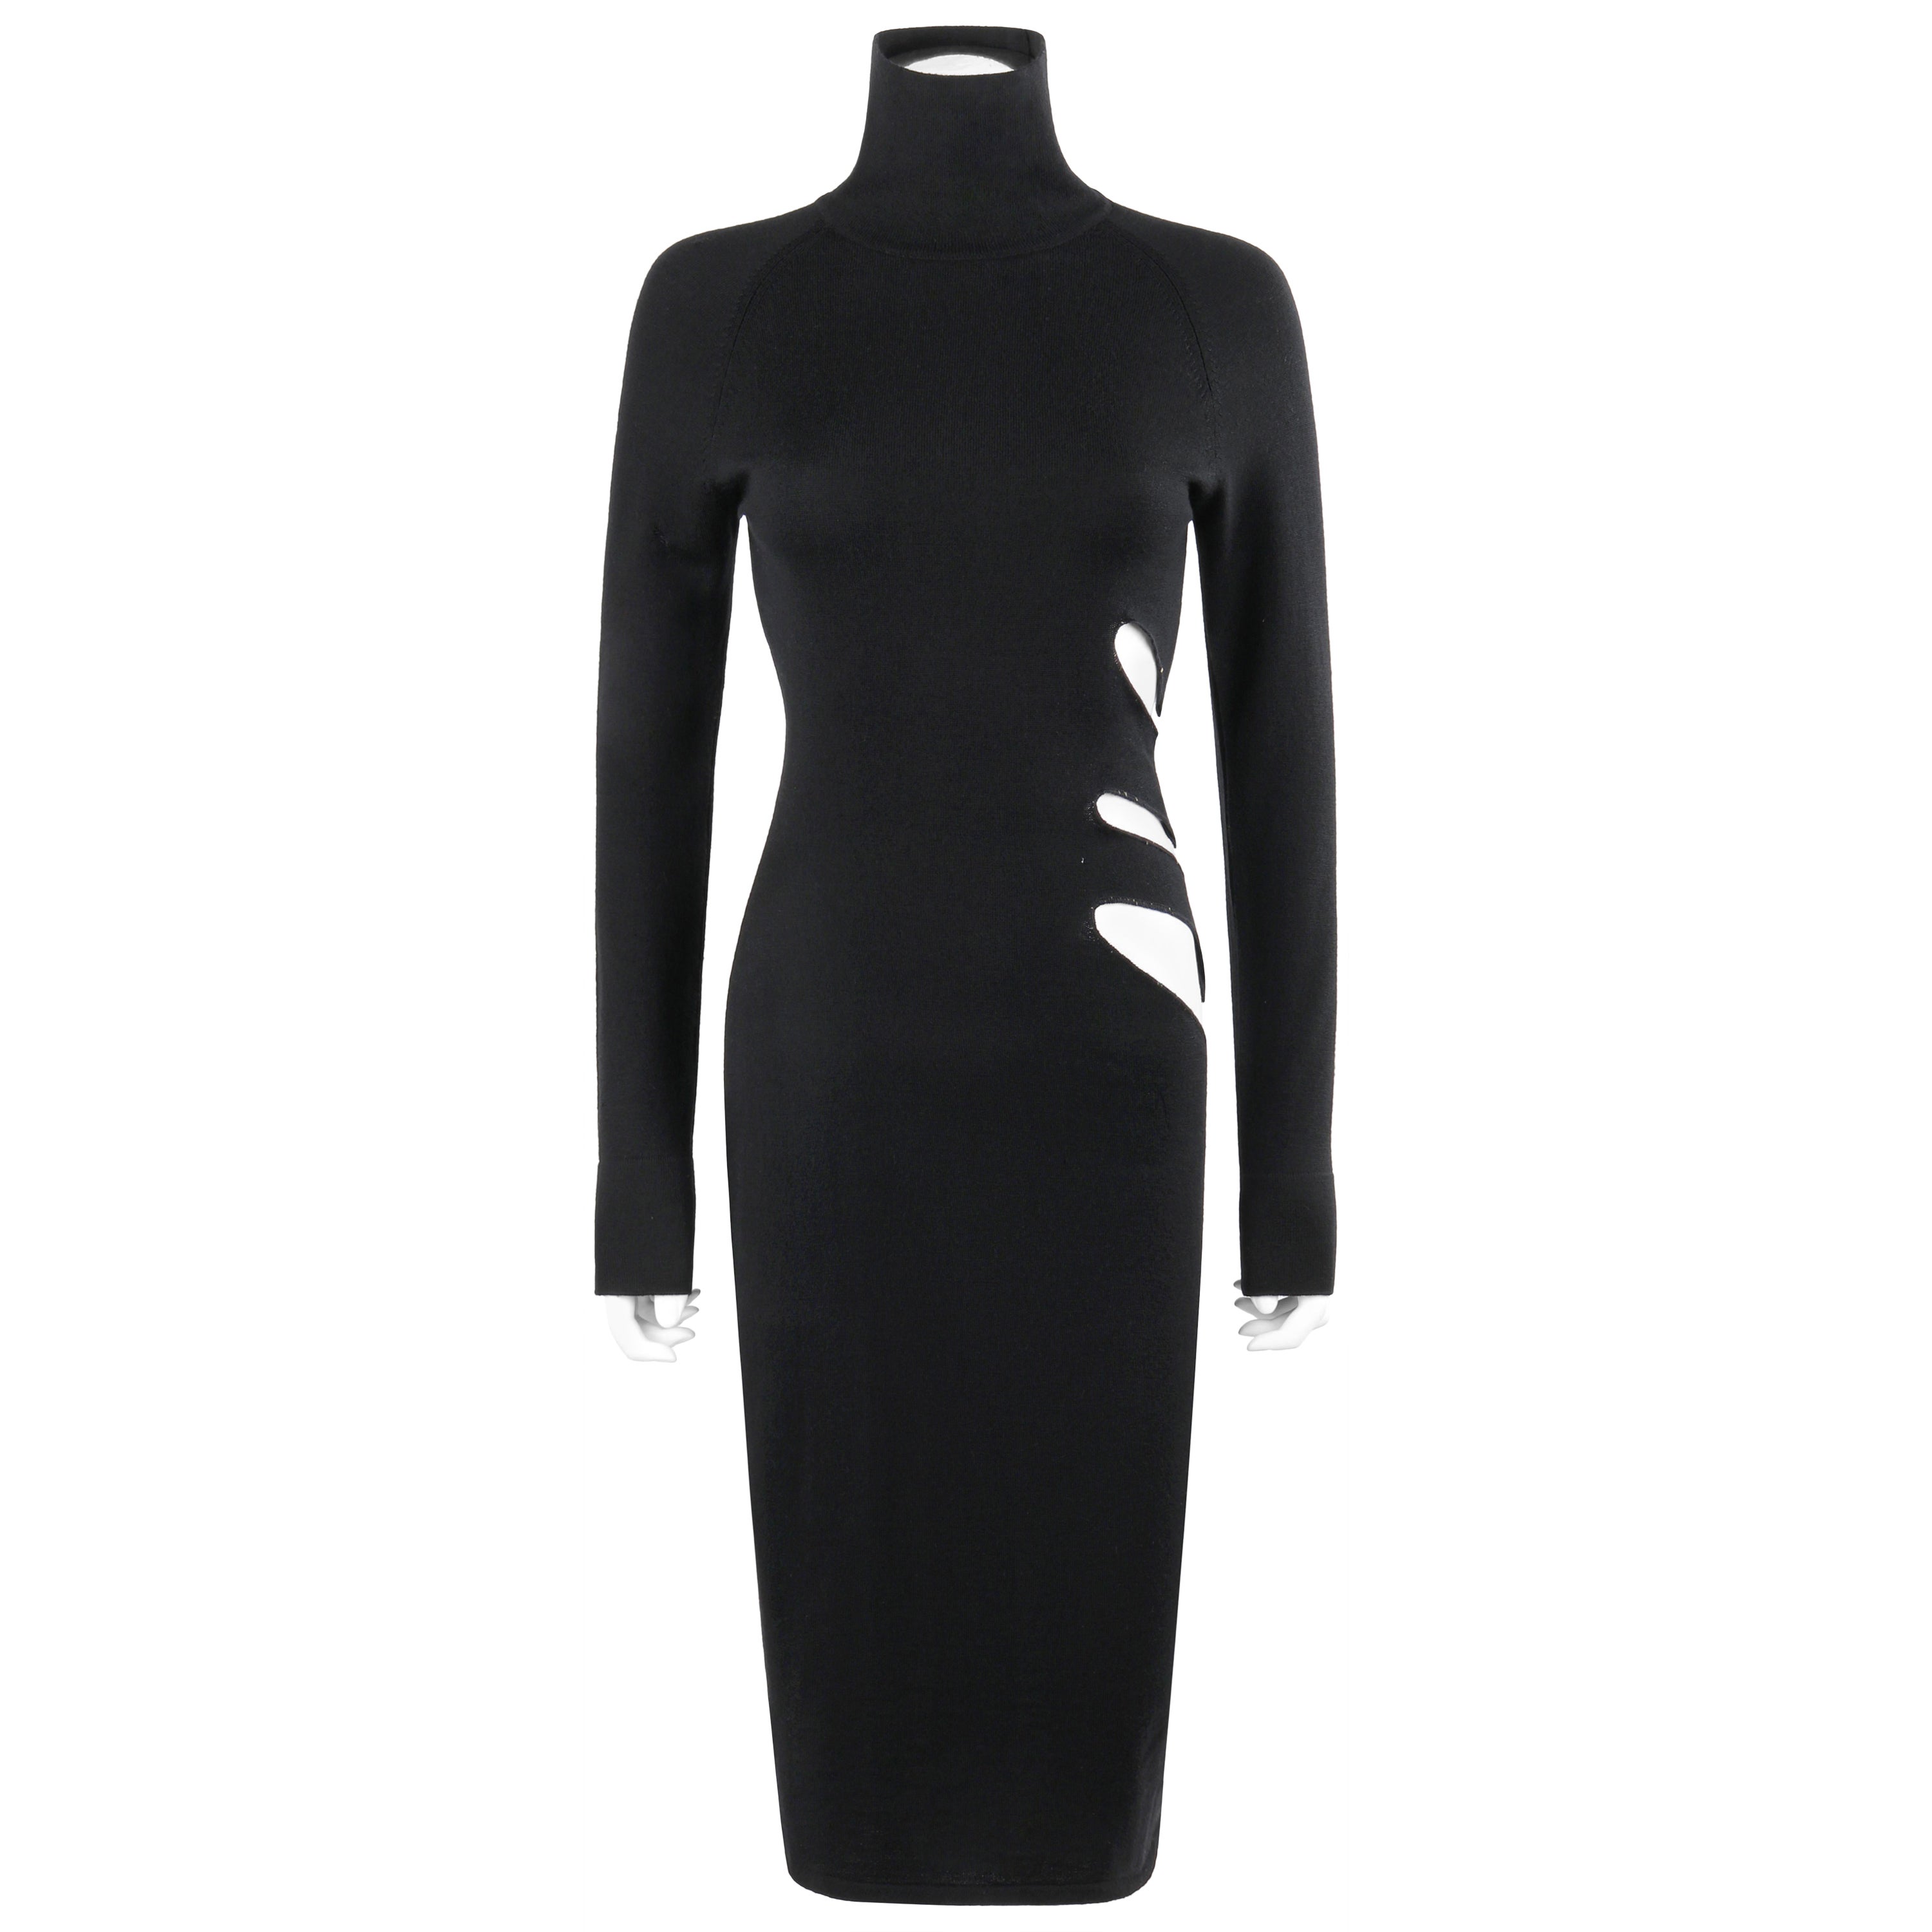 ALEXANDER McQUEEN S/S 1997 “La Poupée” Black Wool Illusion Cutout Cocktail Dress For Sale